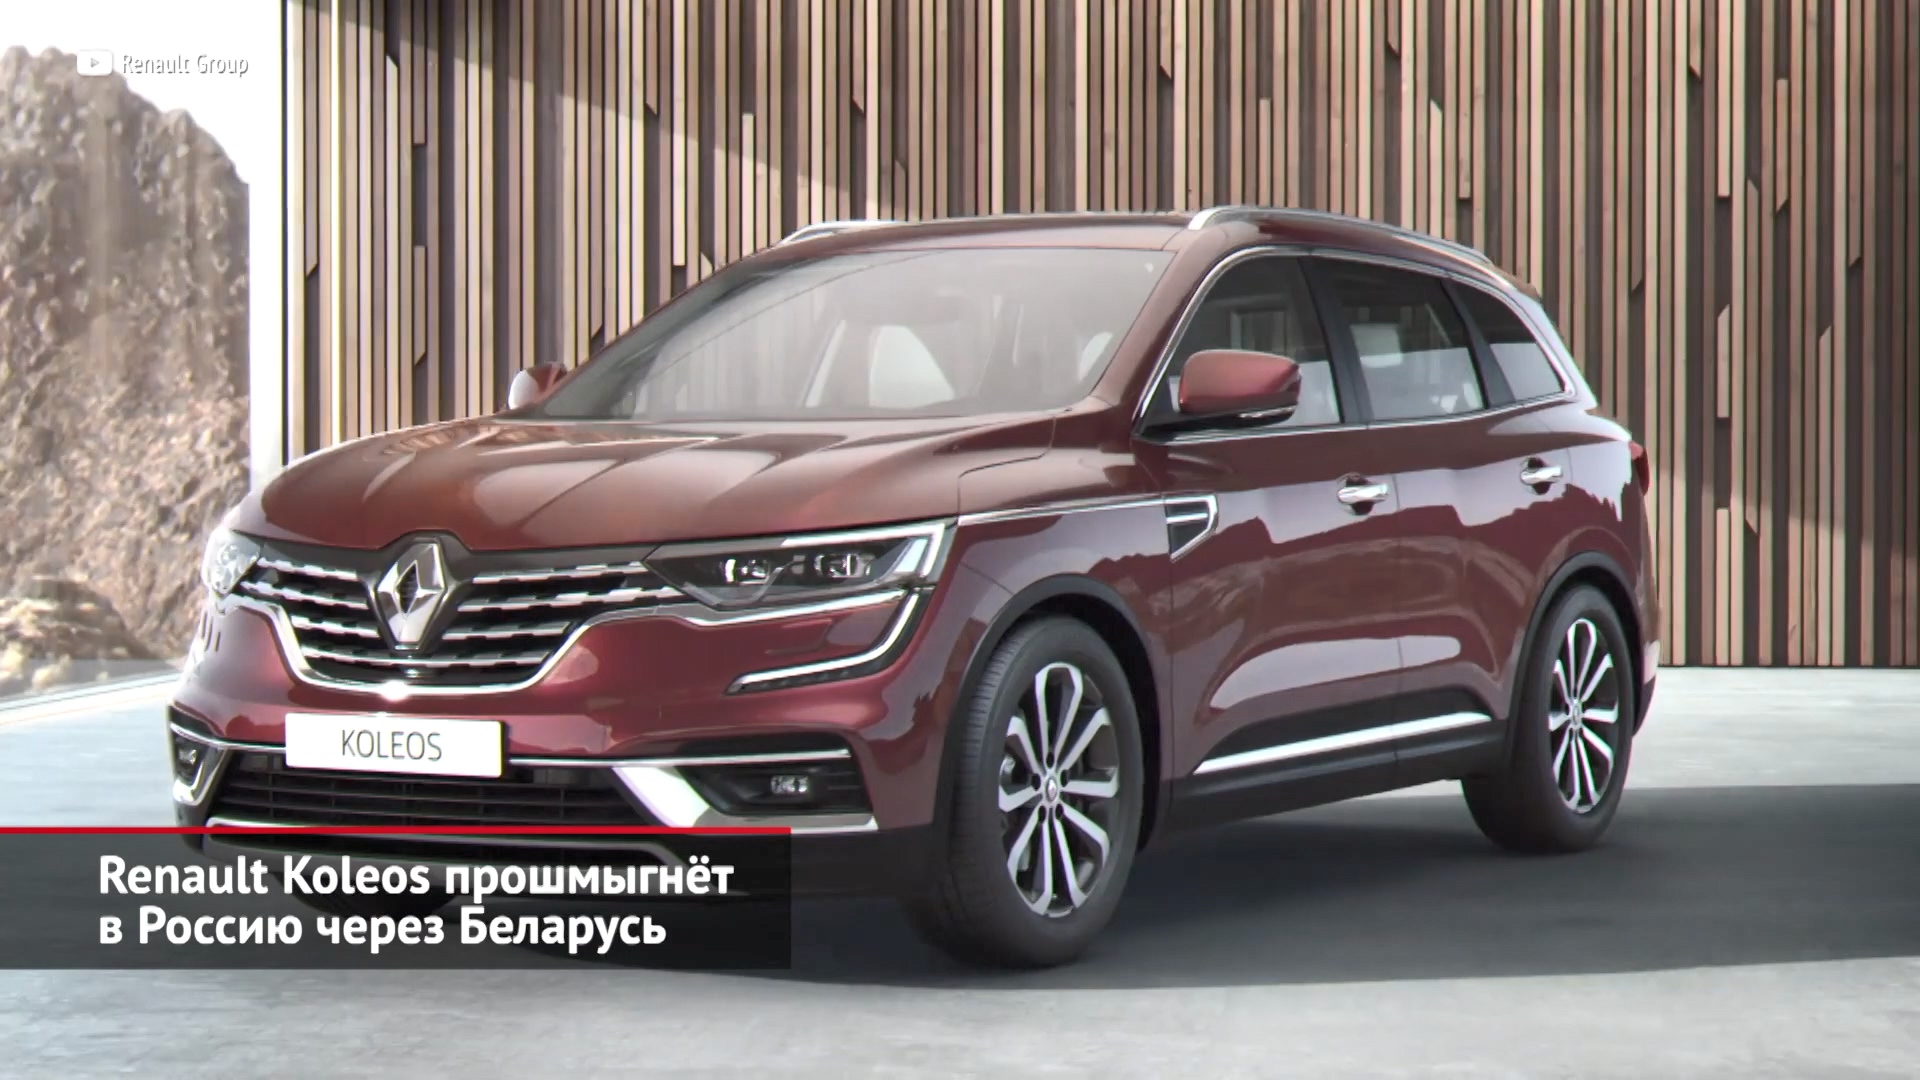 Renault Koleos прошмыгнёт в Россию через Беларусь | Новости с колёс №2115